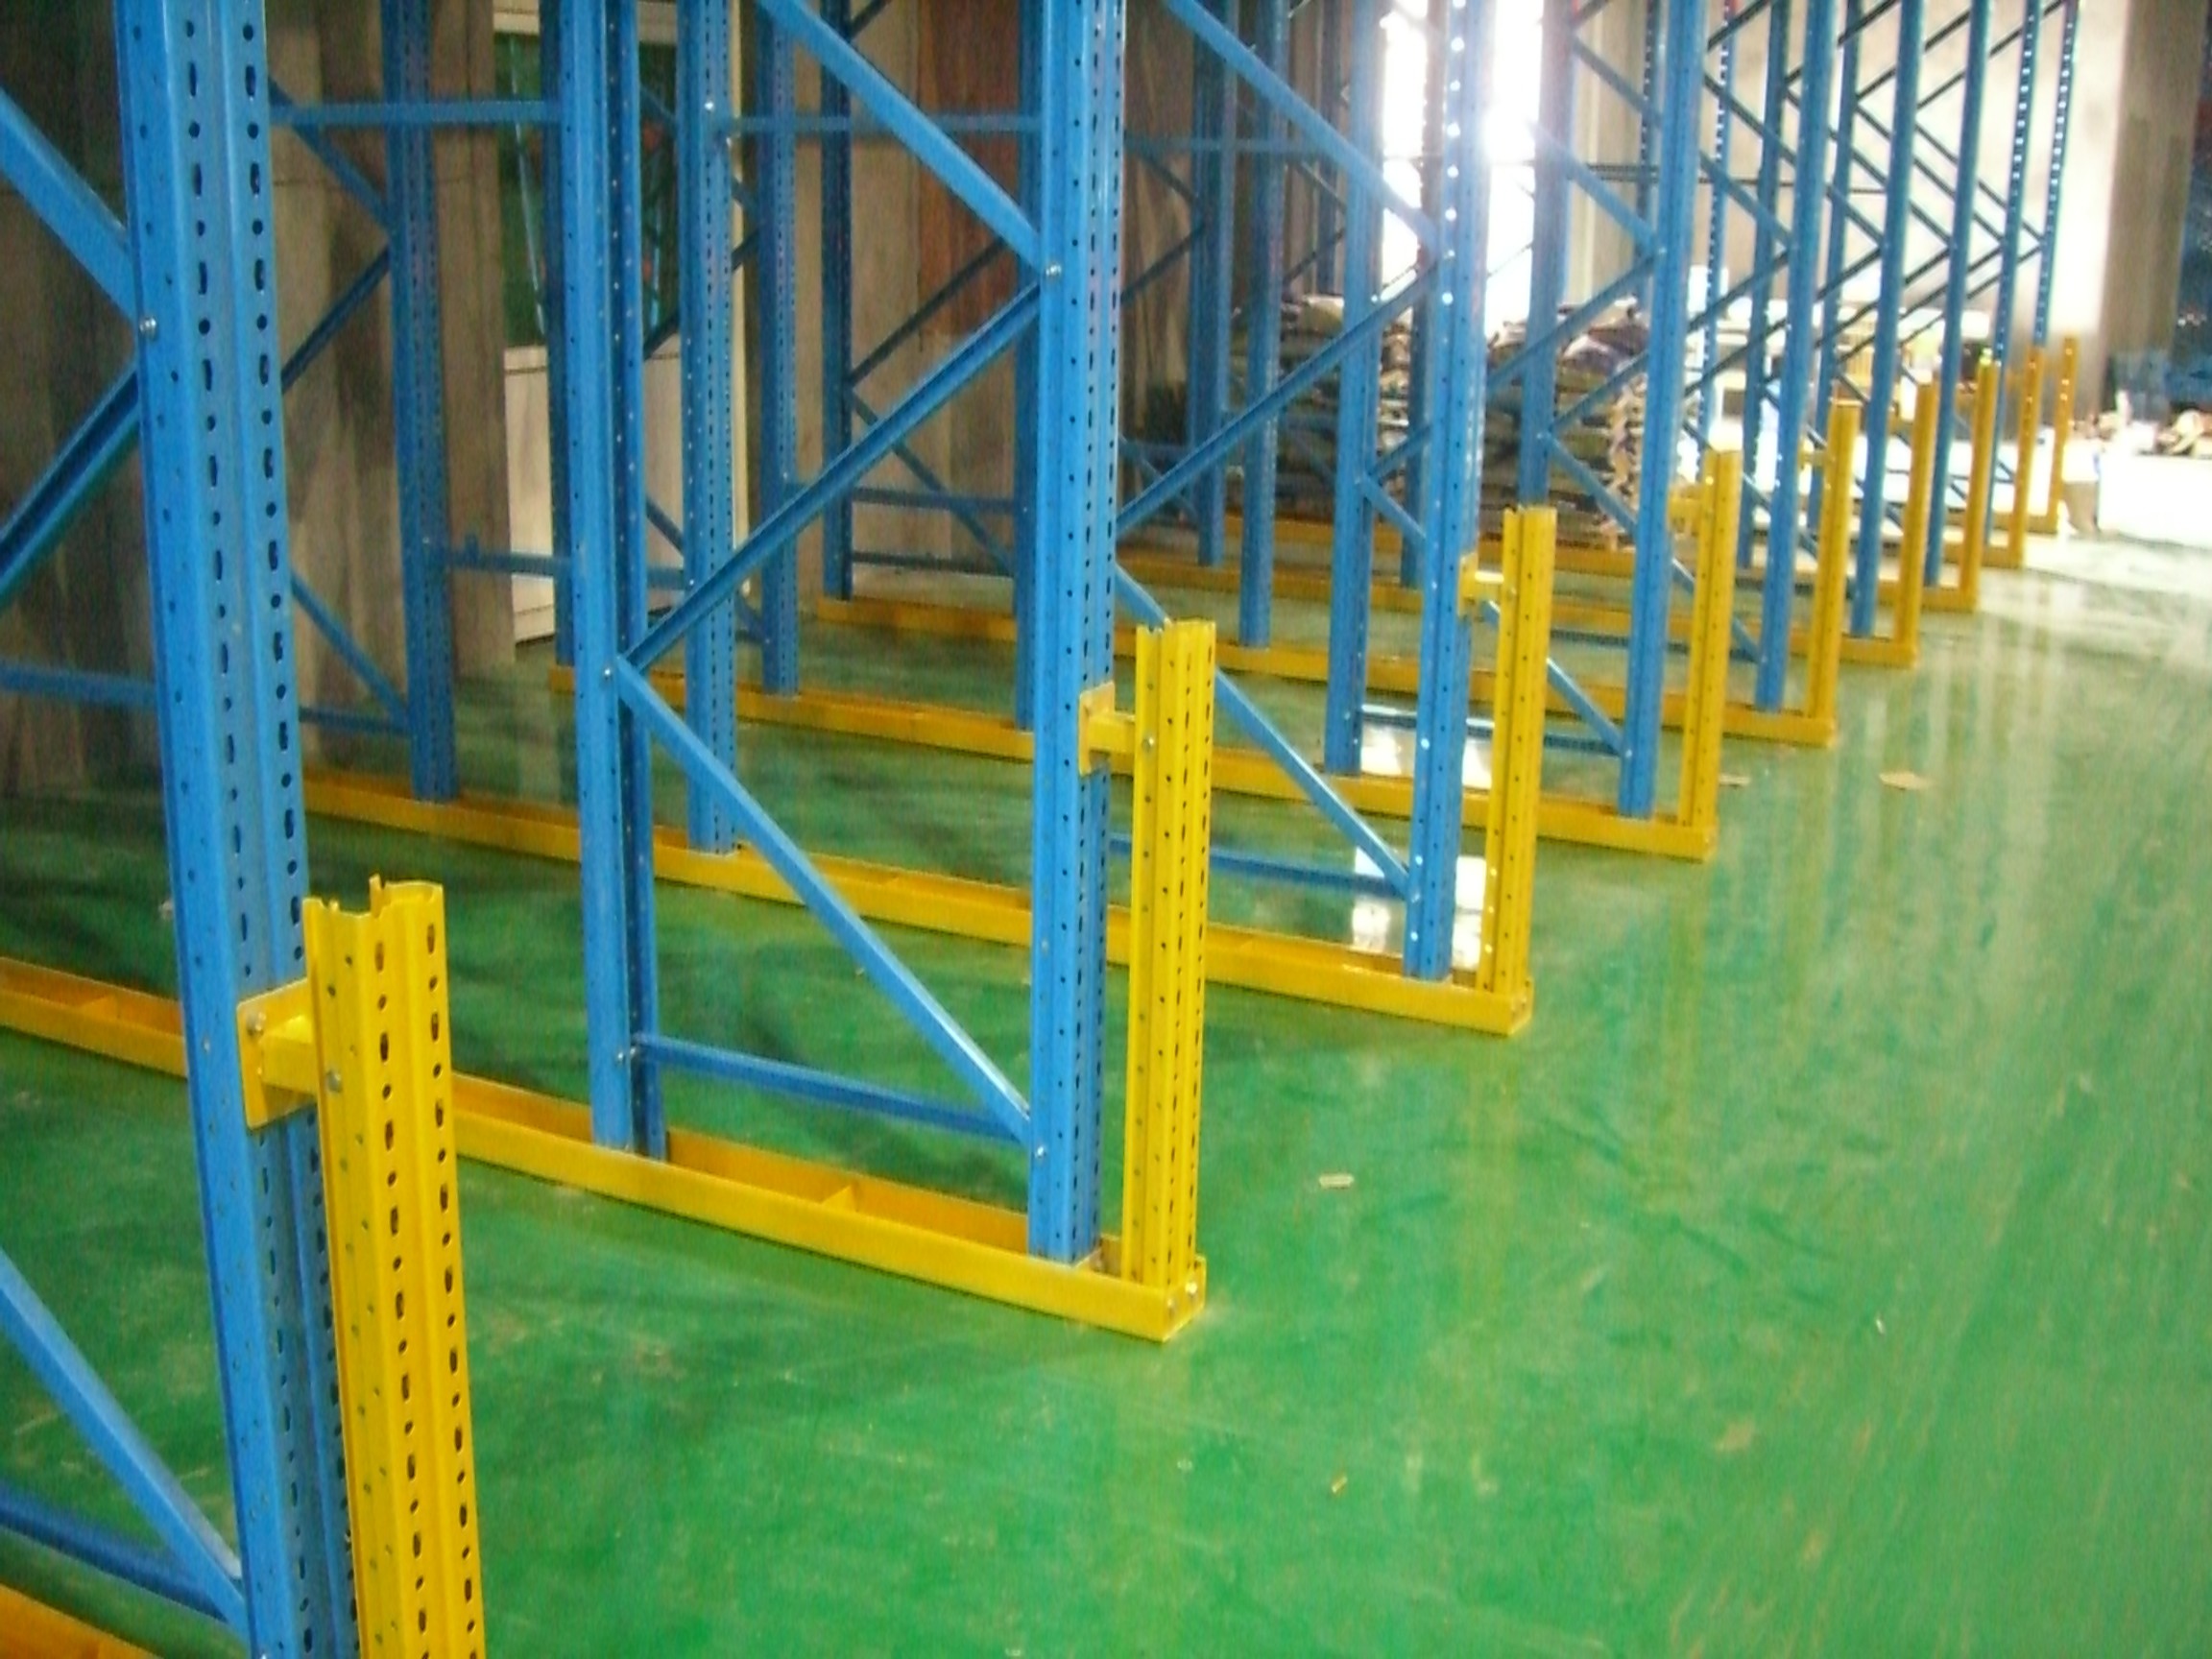 درایو ذخیره سازی صنعتی در سیستم رکاب رنگ و روکش پودری برای انبار تدارکات